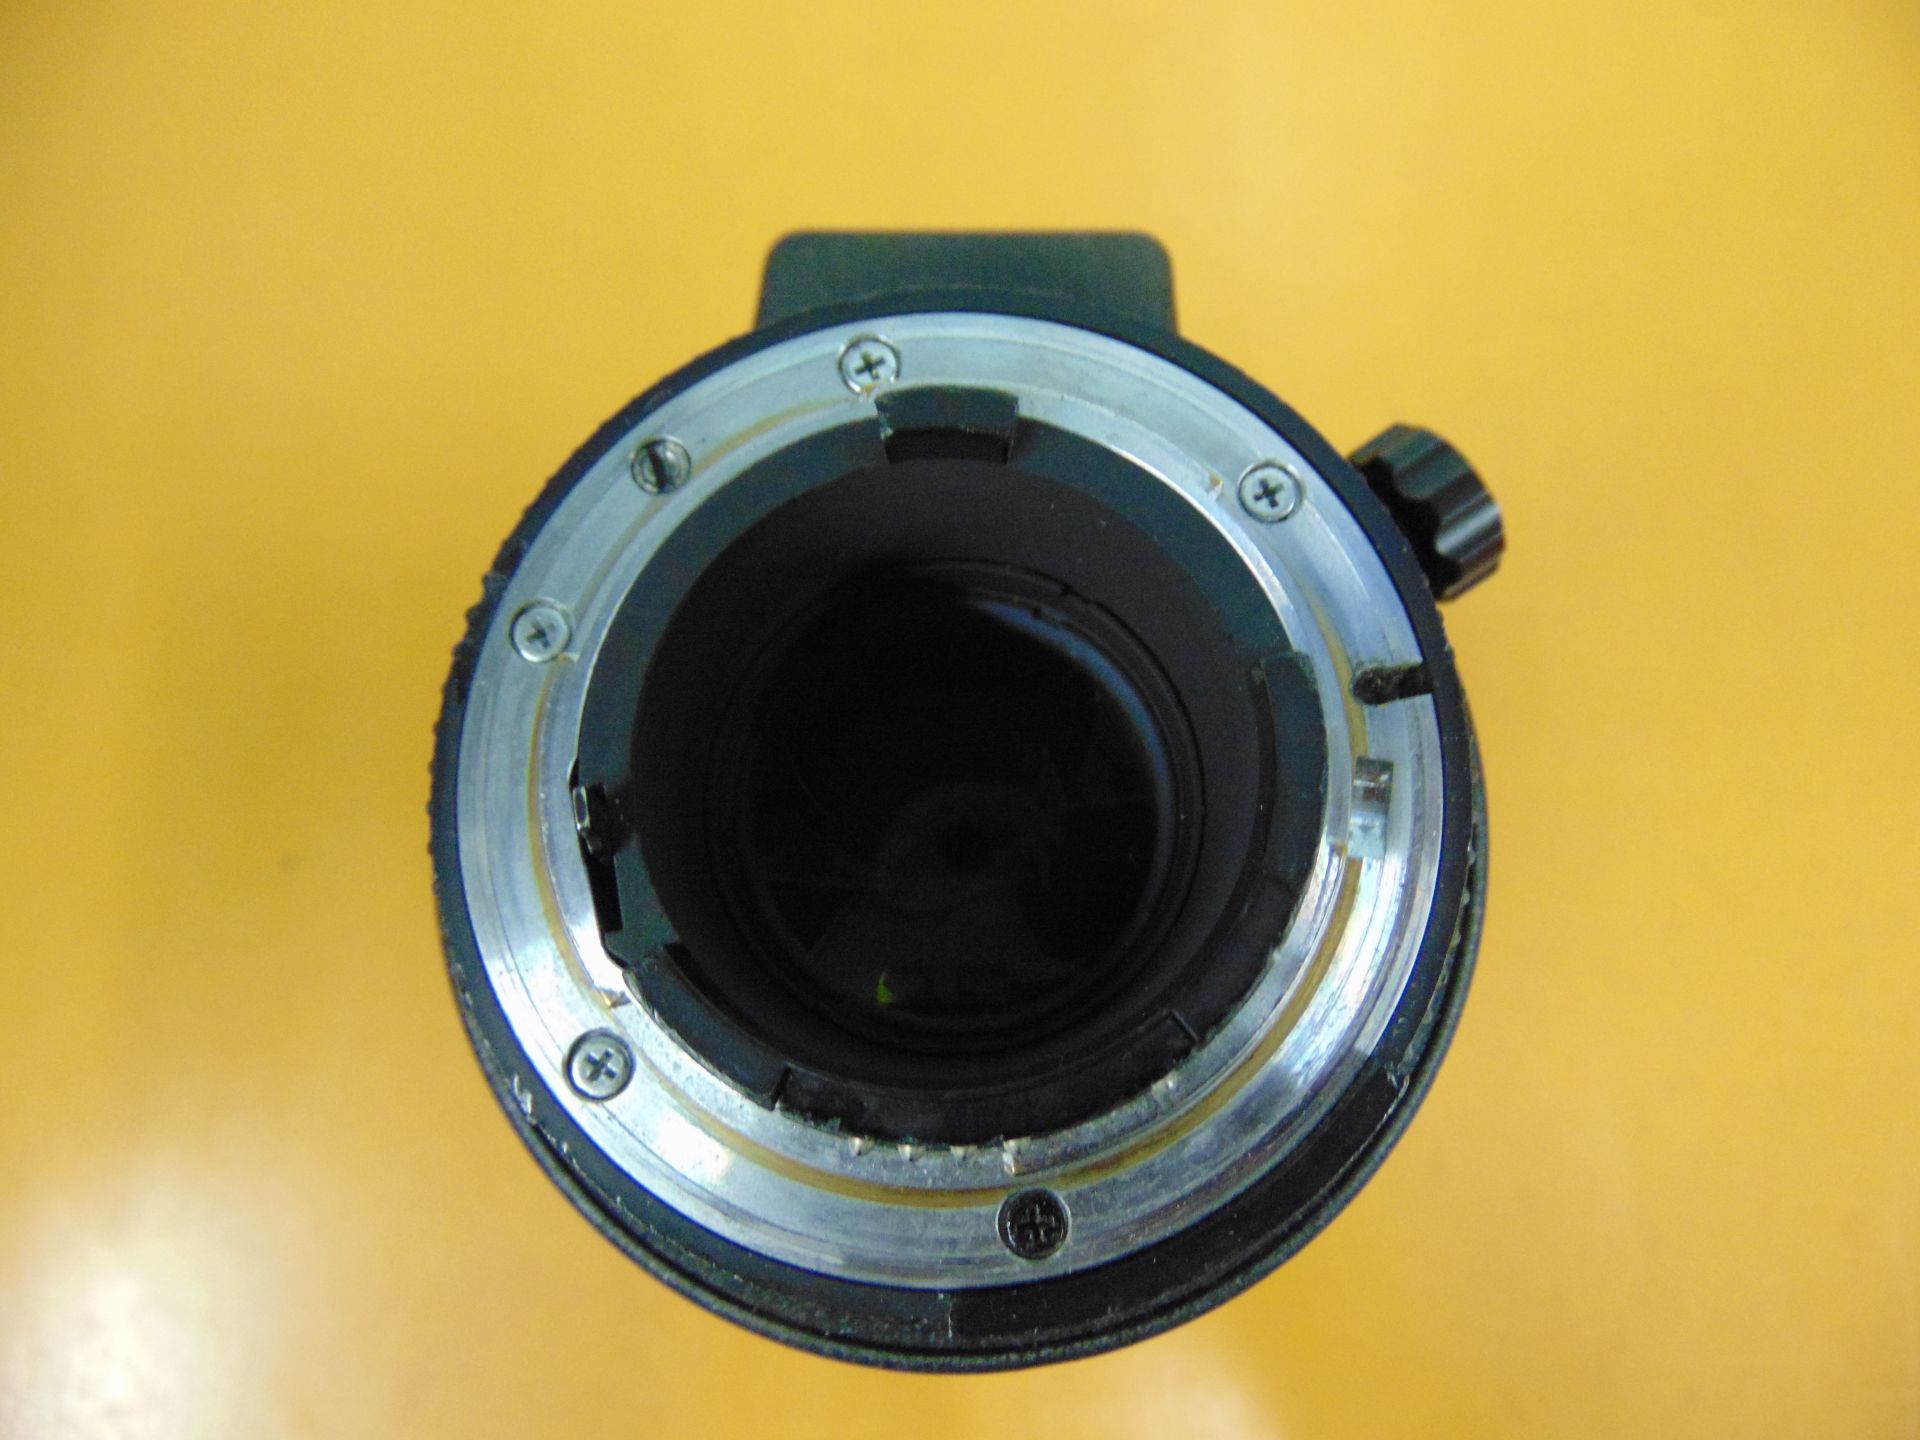 Nikon ED AF Nikkor 80-200mm 1:2.8 D Lense with Leather Carry Case - Image 6 of 8